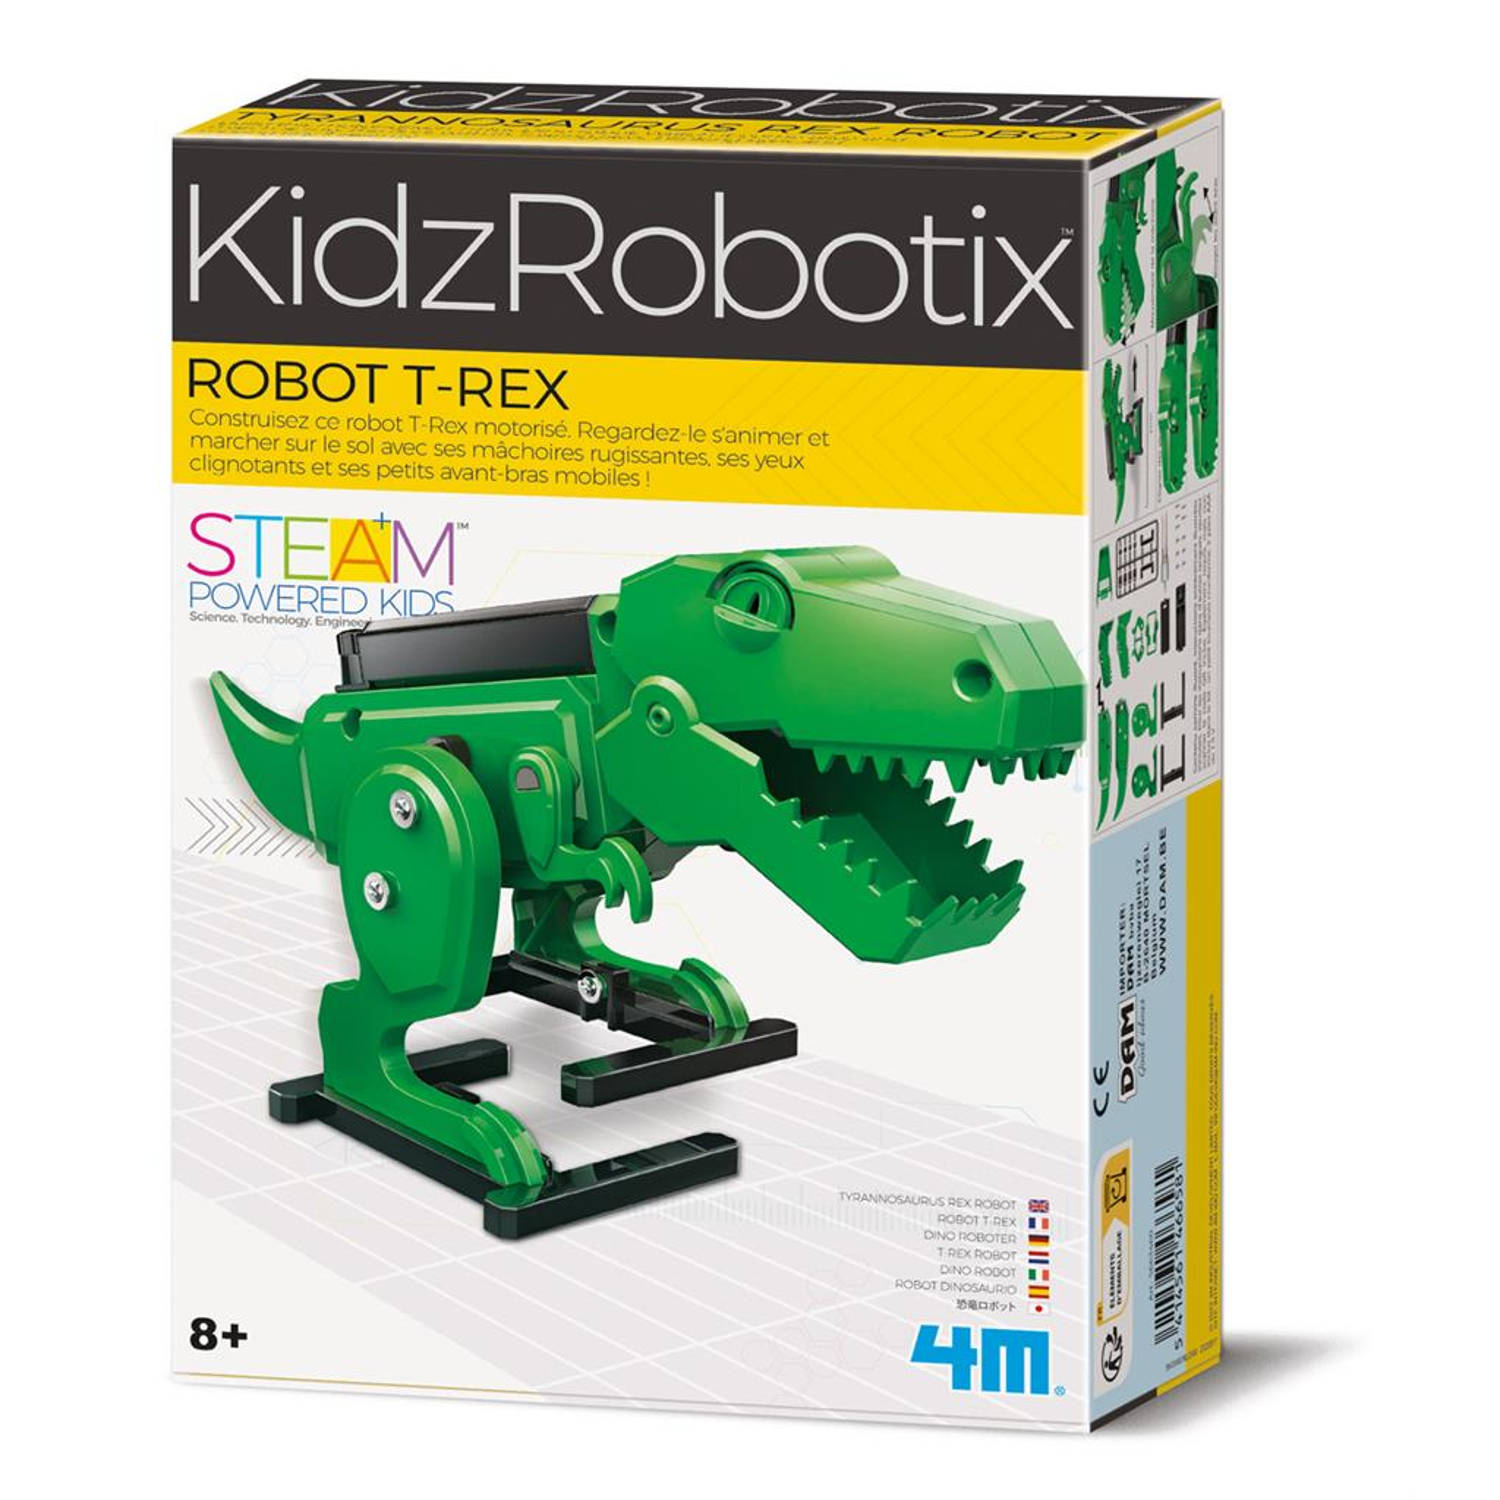 4M KIDZROBOTIX: T-REX ROBOT 21x12cm / FR & NL VERPAKKING, werkt op 2x1.5V AAA batterijen (niet inbegrepen), doos 24x16,5x6cm, 8+